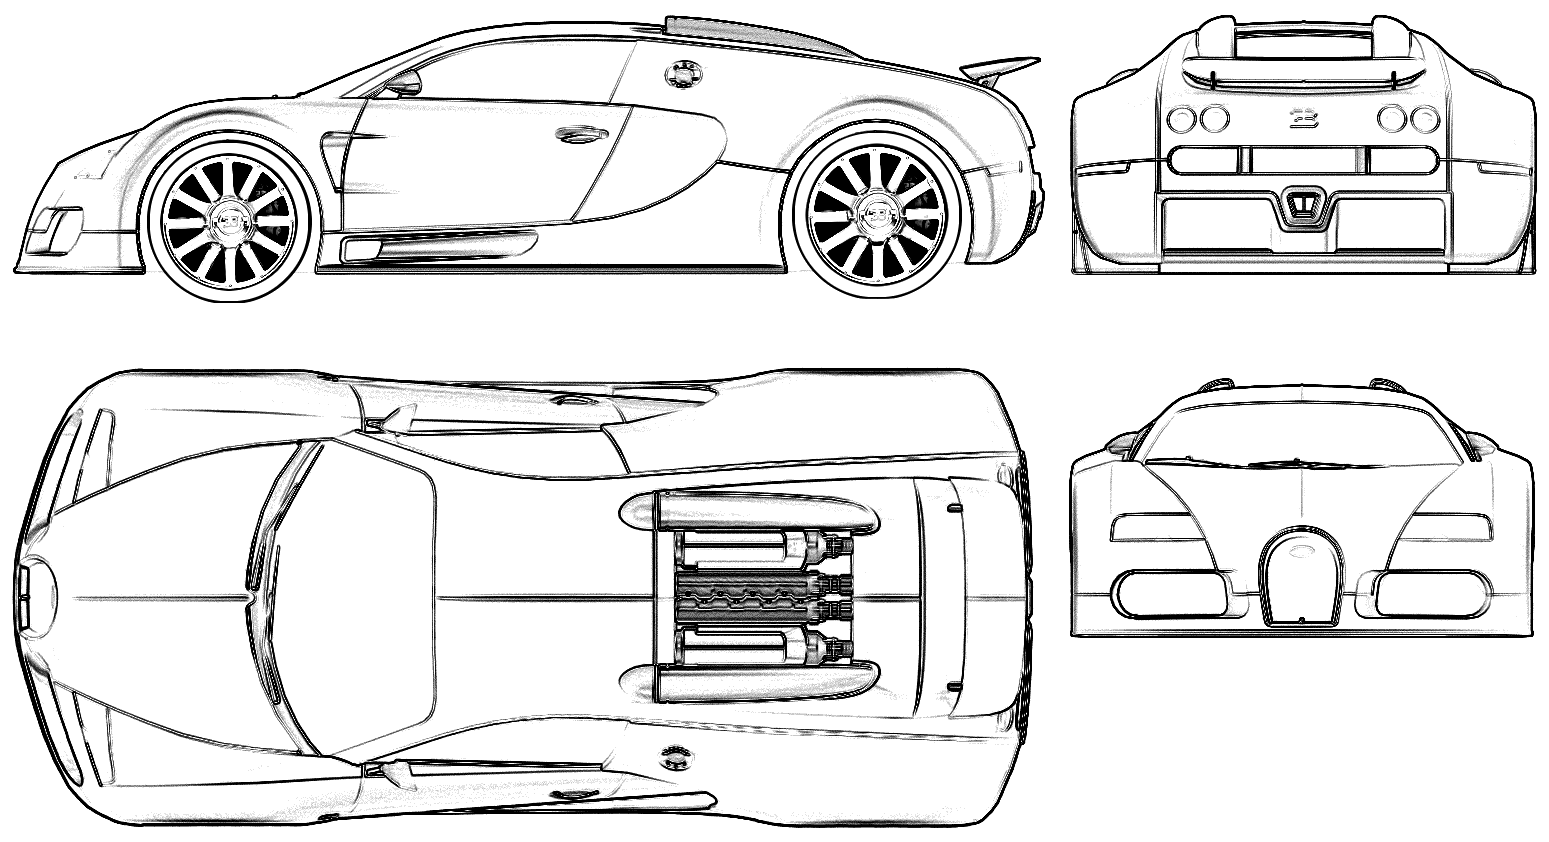 Mašīna Bugatti 16-4 Veyron